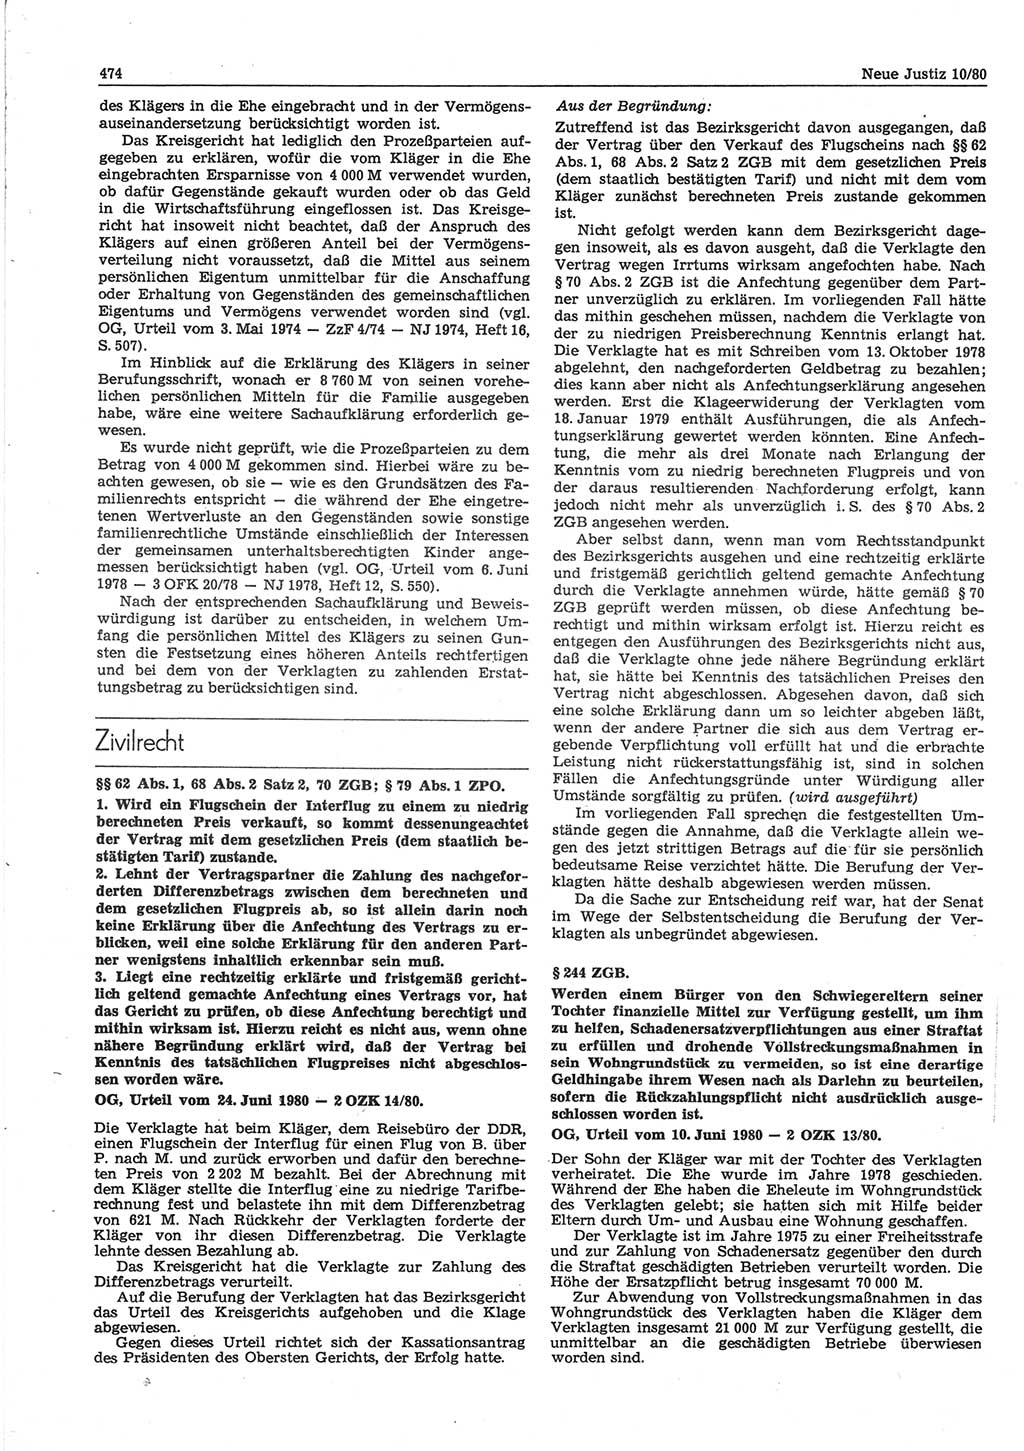 Neue Justiz (NJ), Zeitschrift für sozialistisches Recht und Gesetzlichkeit [Deutsche Demokratische Republik (DDR)], 34. Jahrgang 1980, Seite 474 (NJ DDR 1980, S. 474)